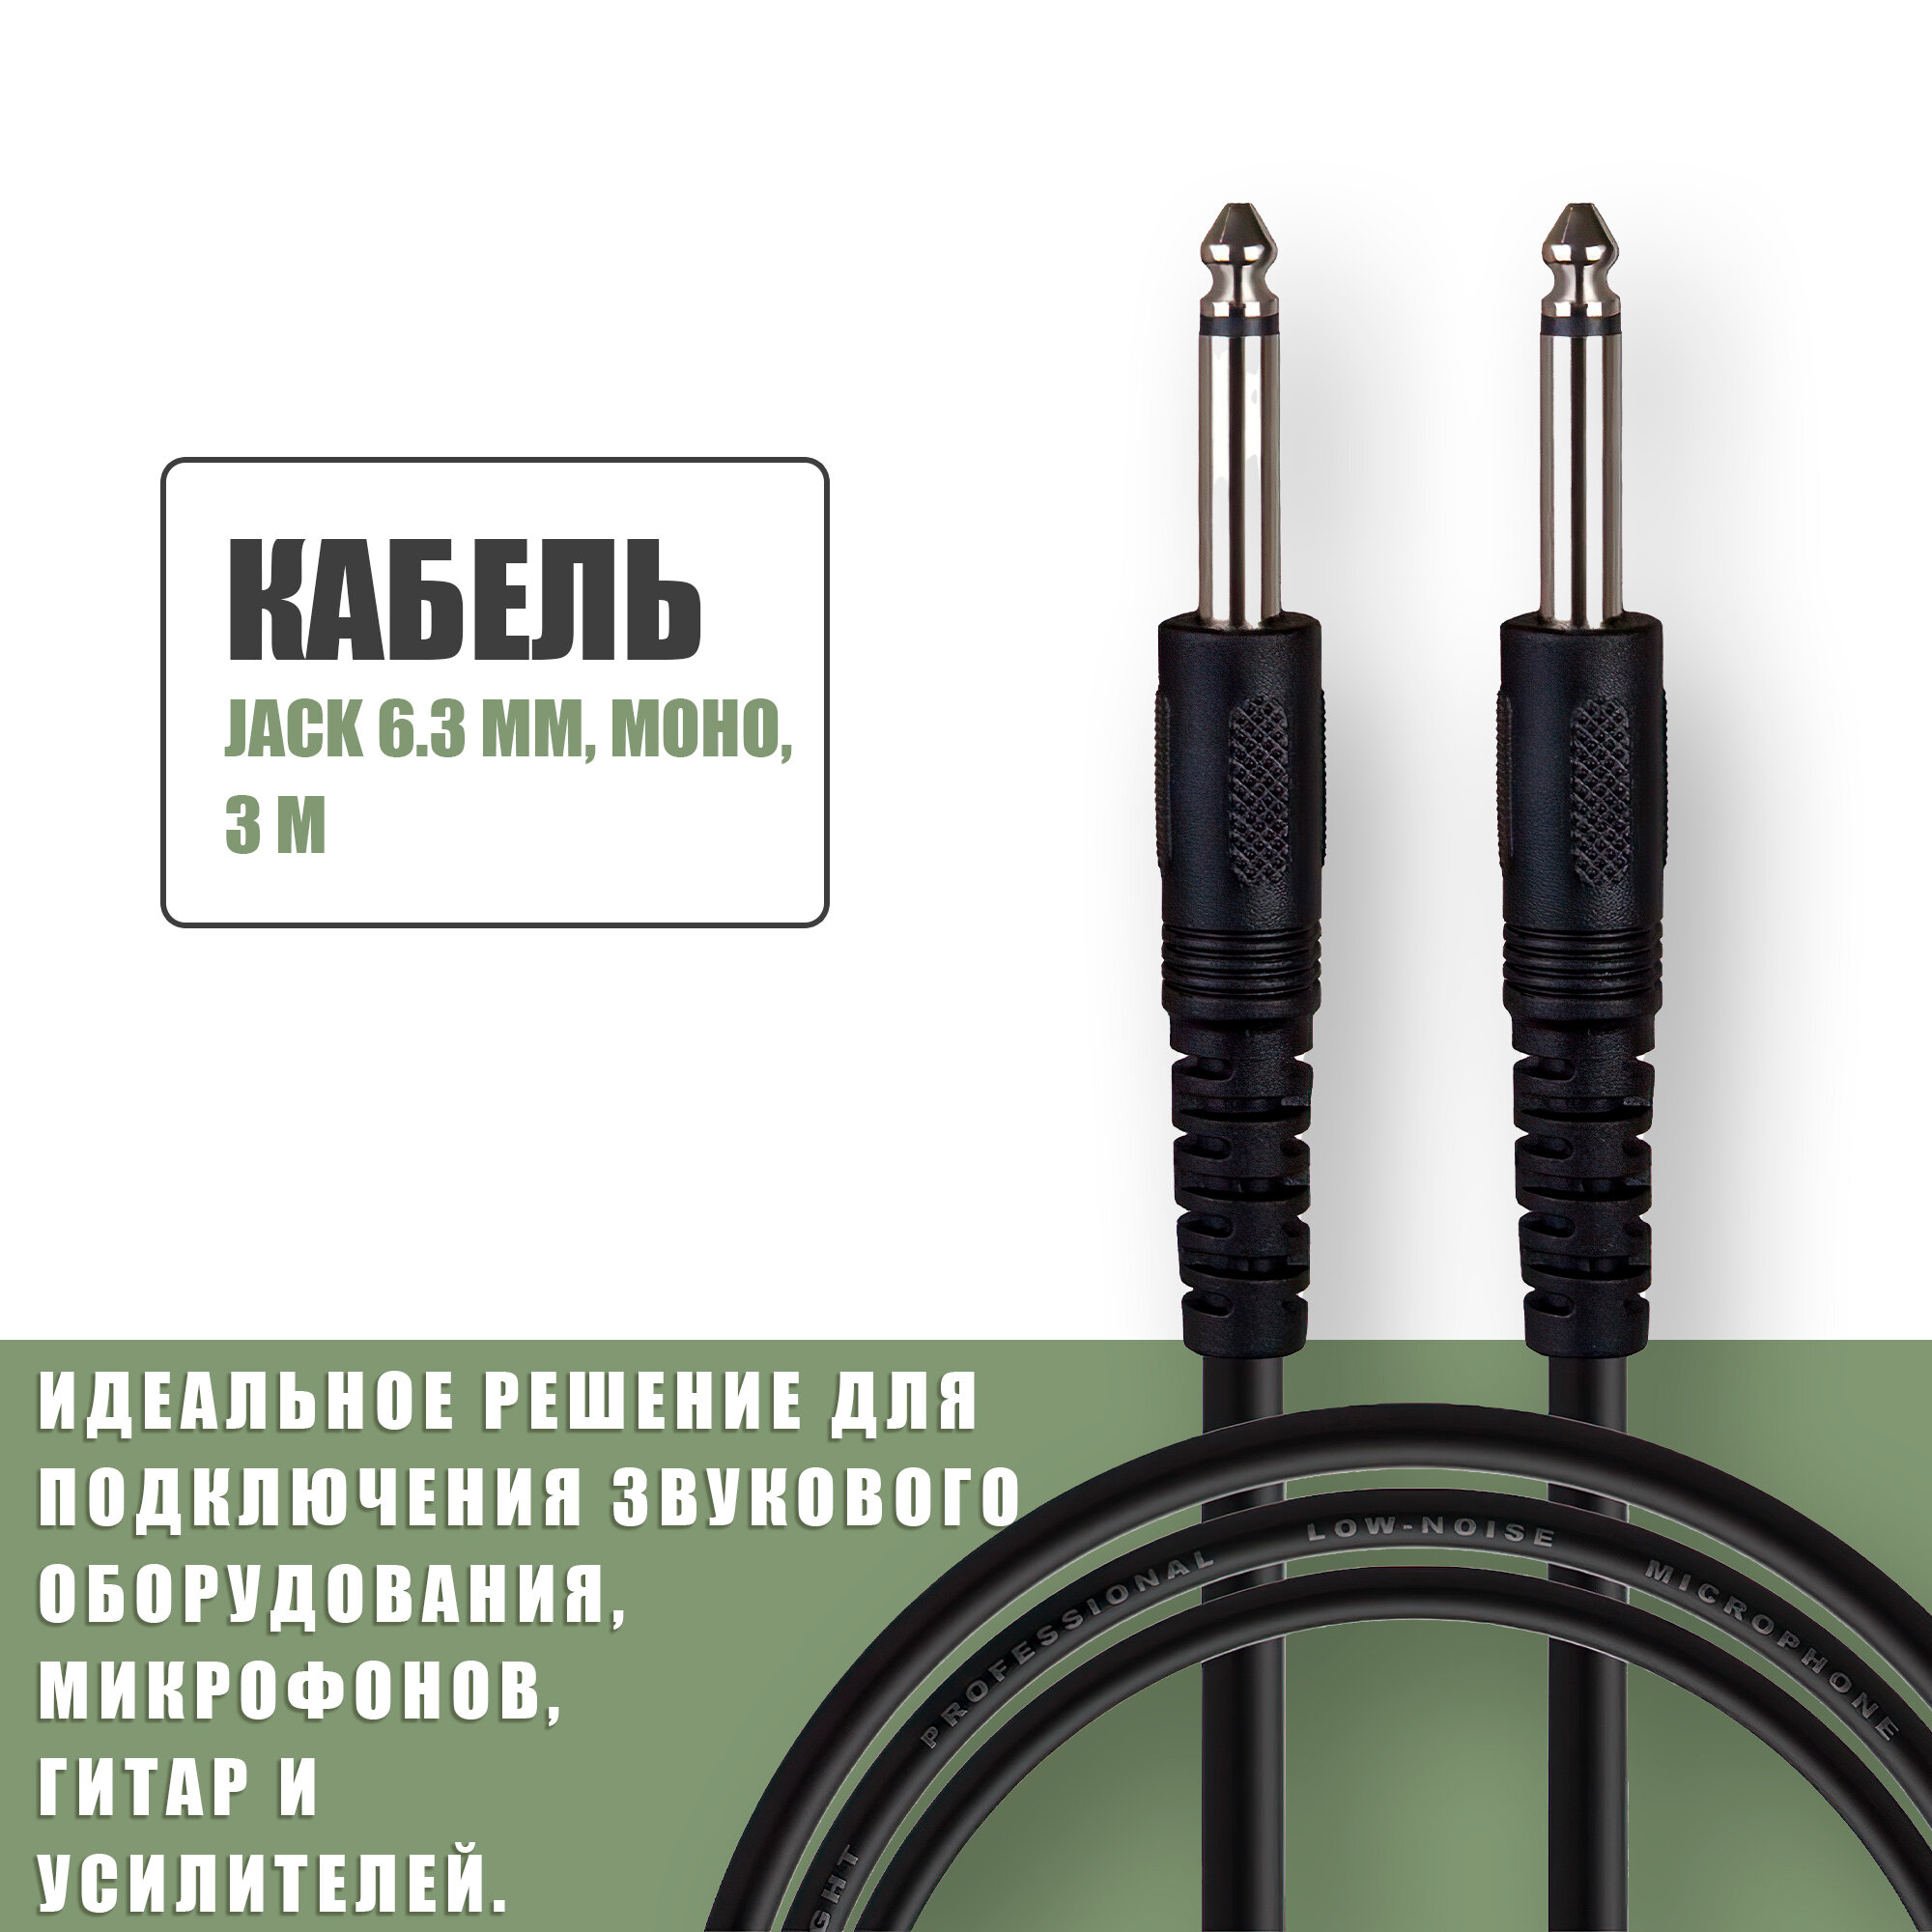 Аудио кабель Jack 63 mm моно (папа - папа) / кабель акустический джек 6.35 / для микрофонов гитар усилителей / 3 метра